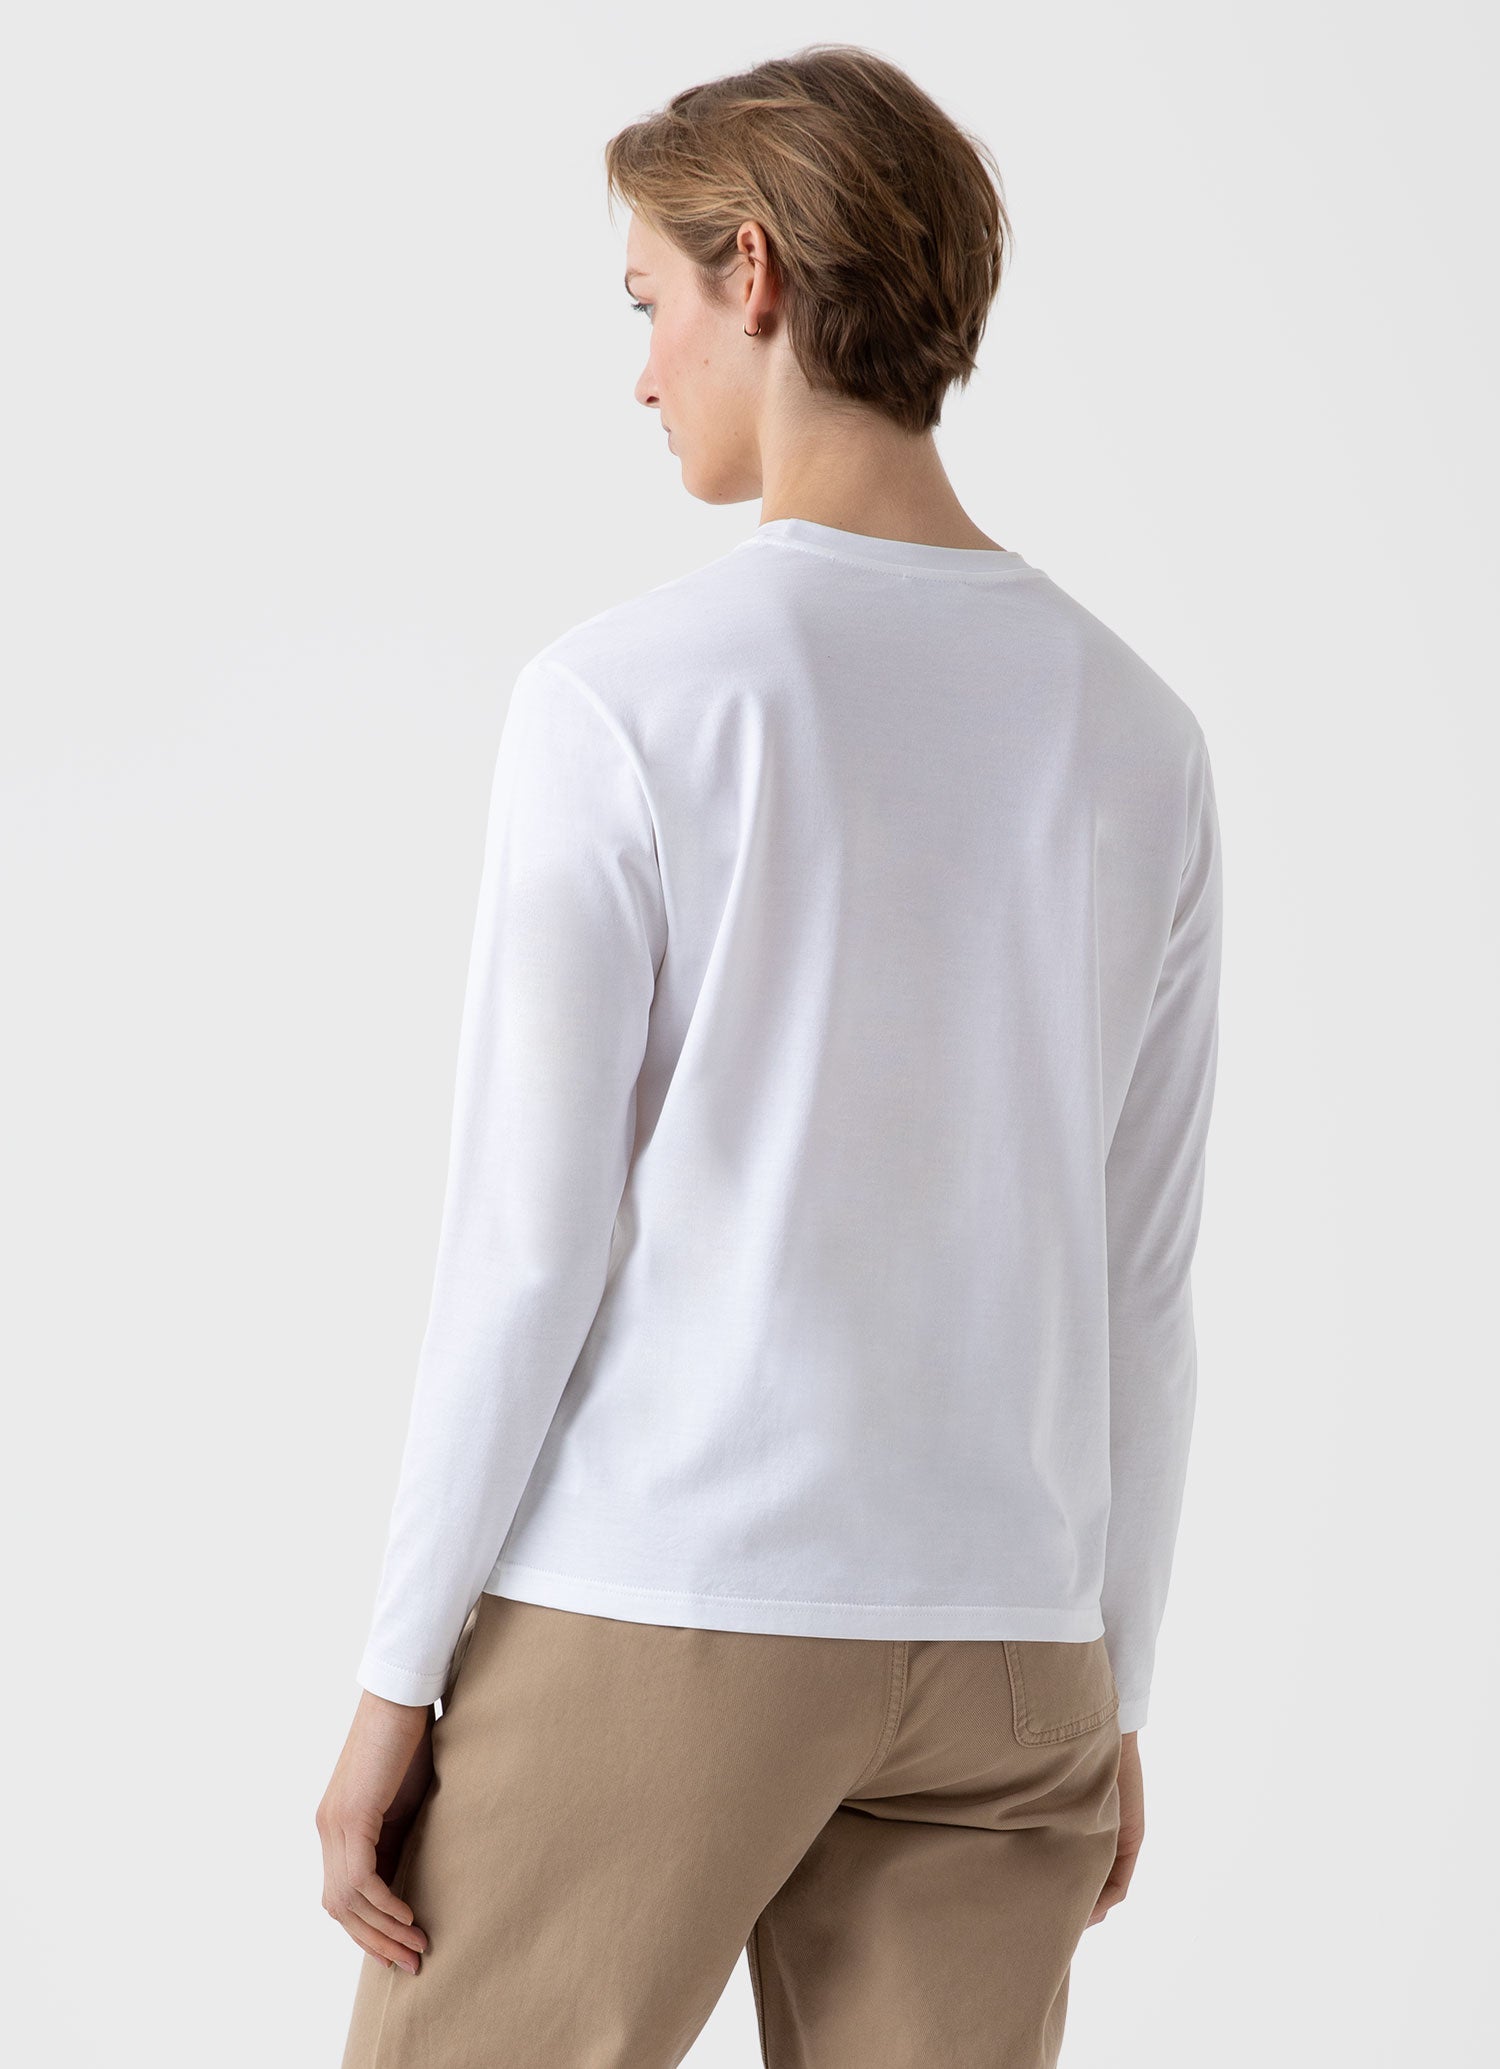 Women's Long Sleeve Boy Fit T-shirt in White | Sunspel